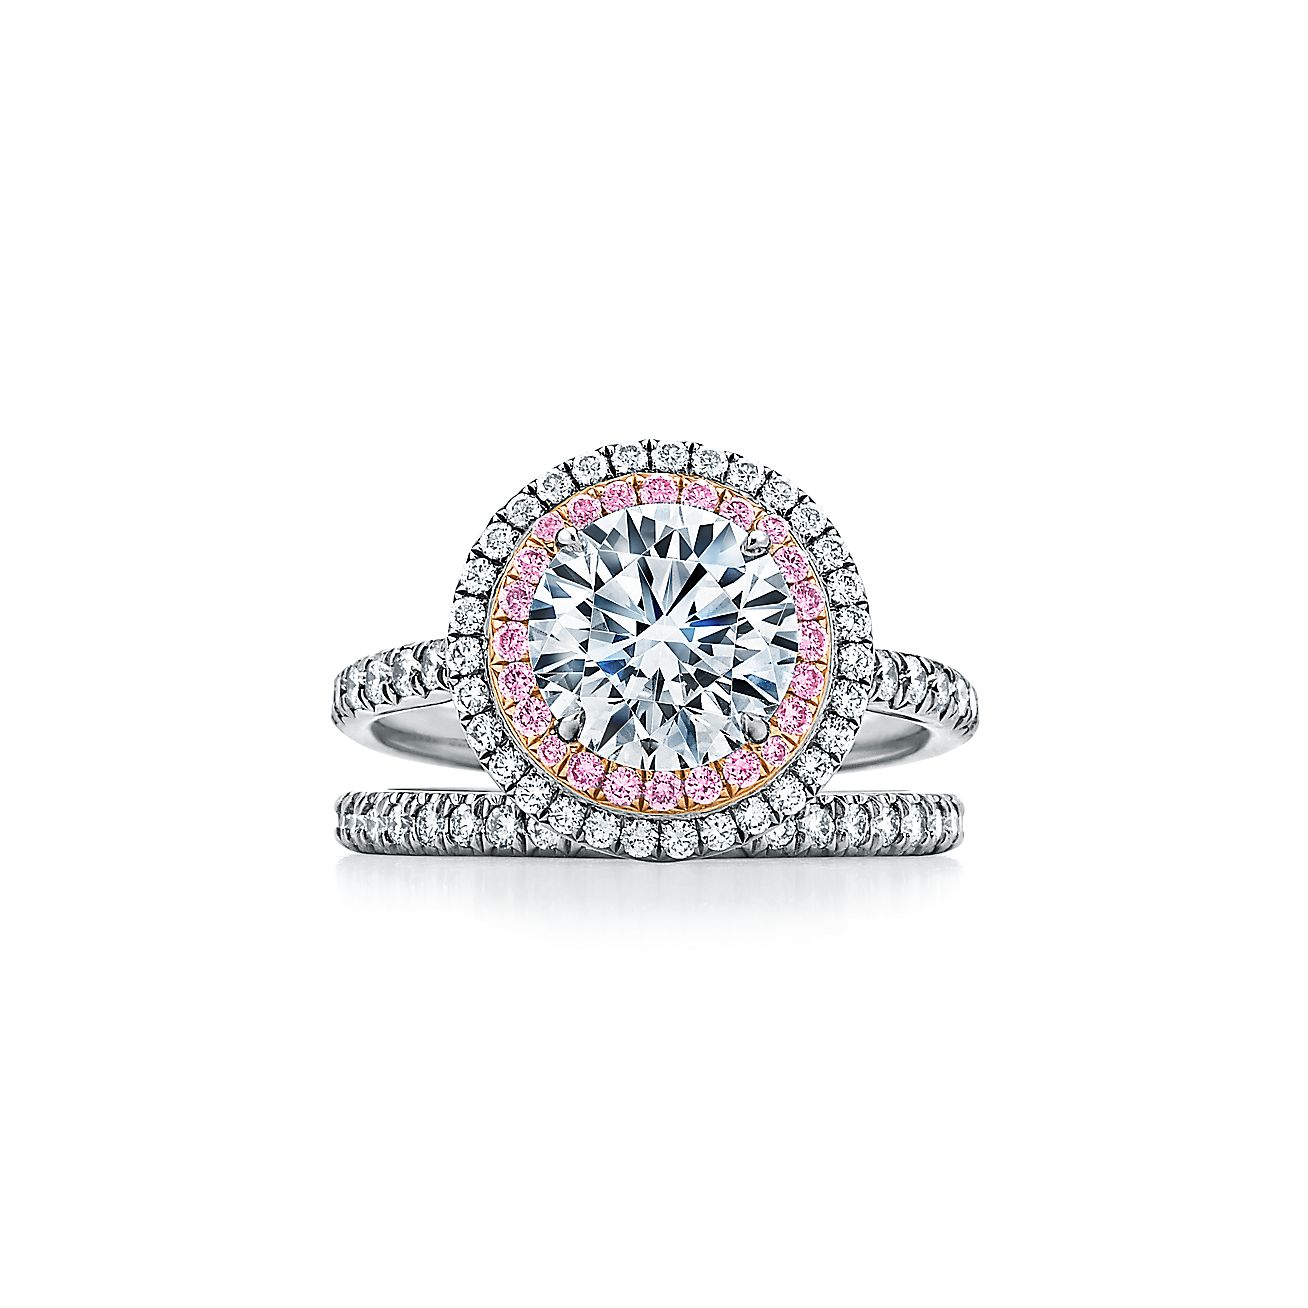 Diamond Sun Ray Necklace in White Diamond, Blue Diamond and Pink Diamo